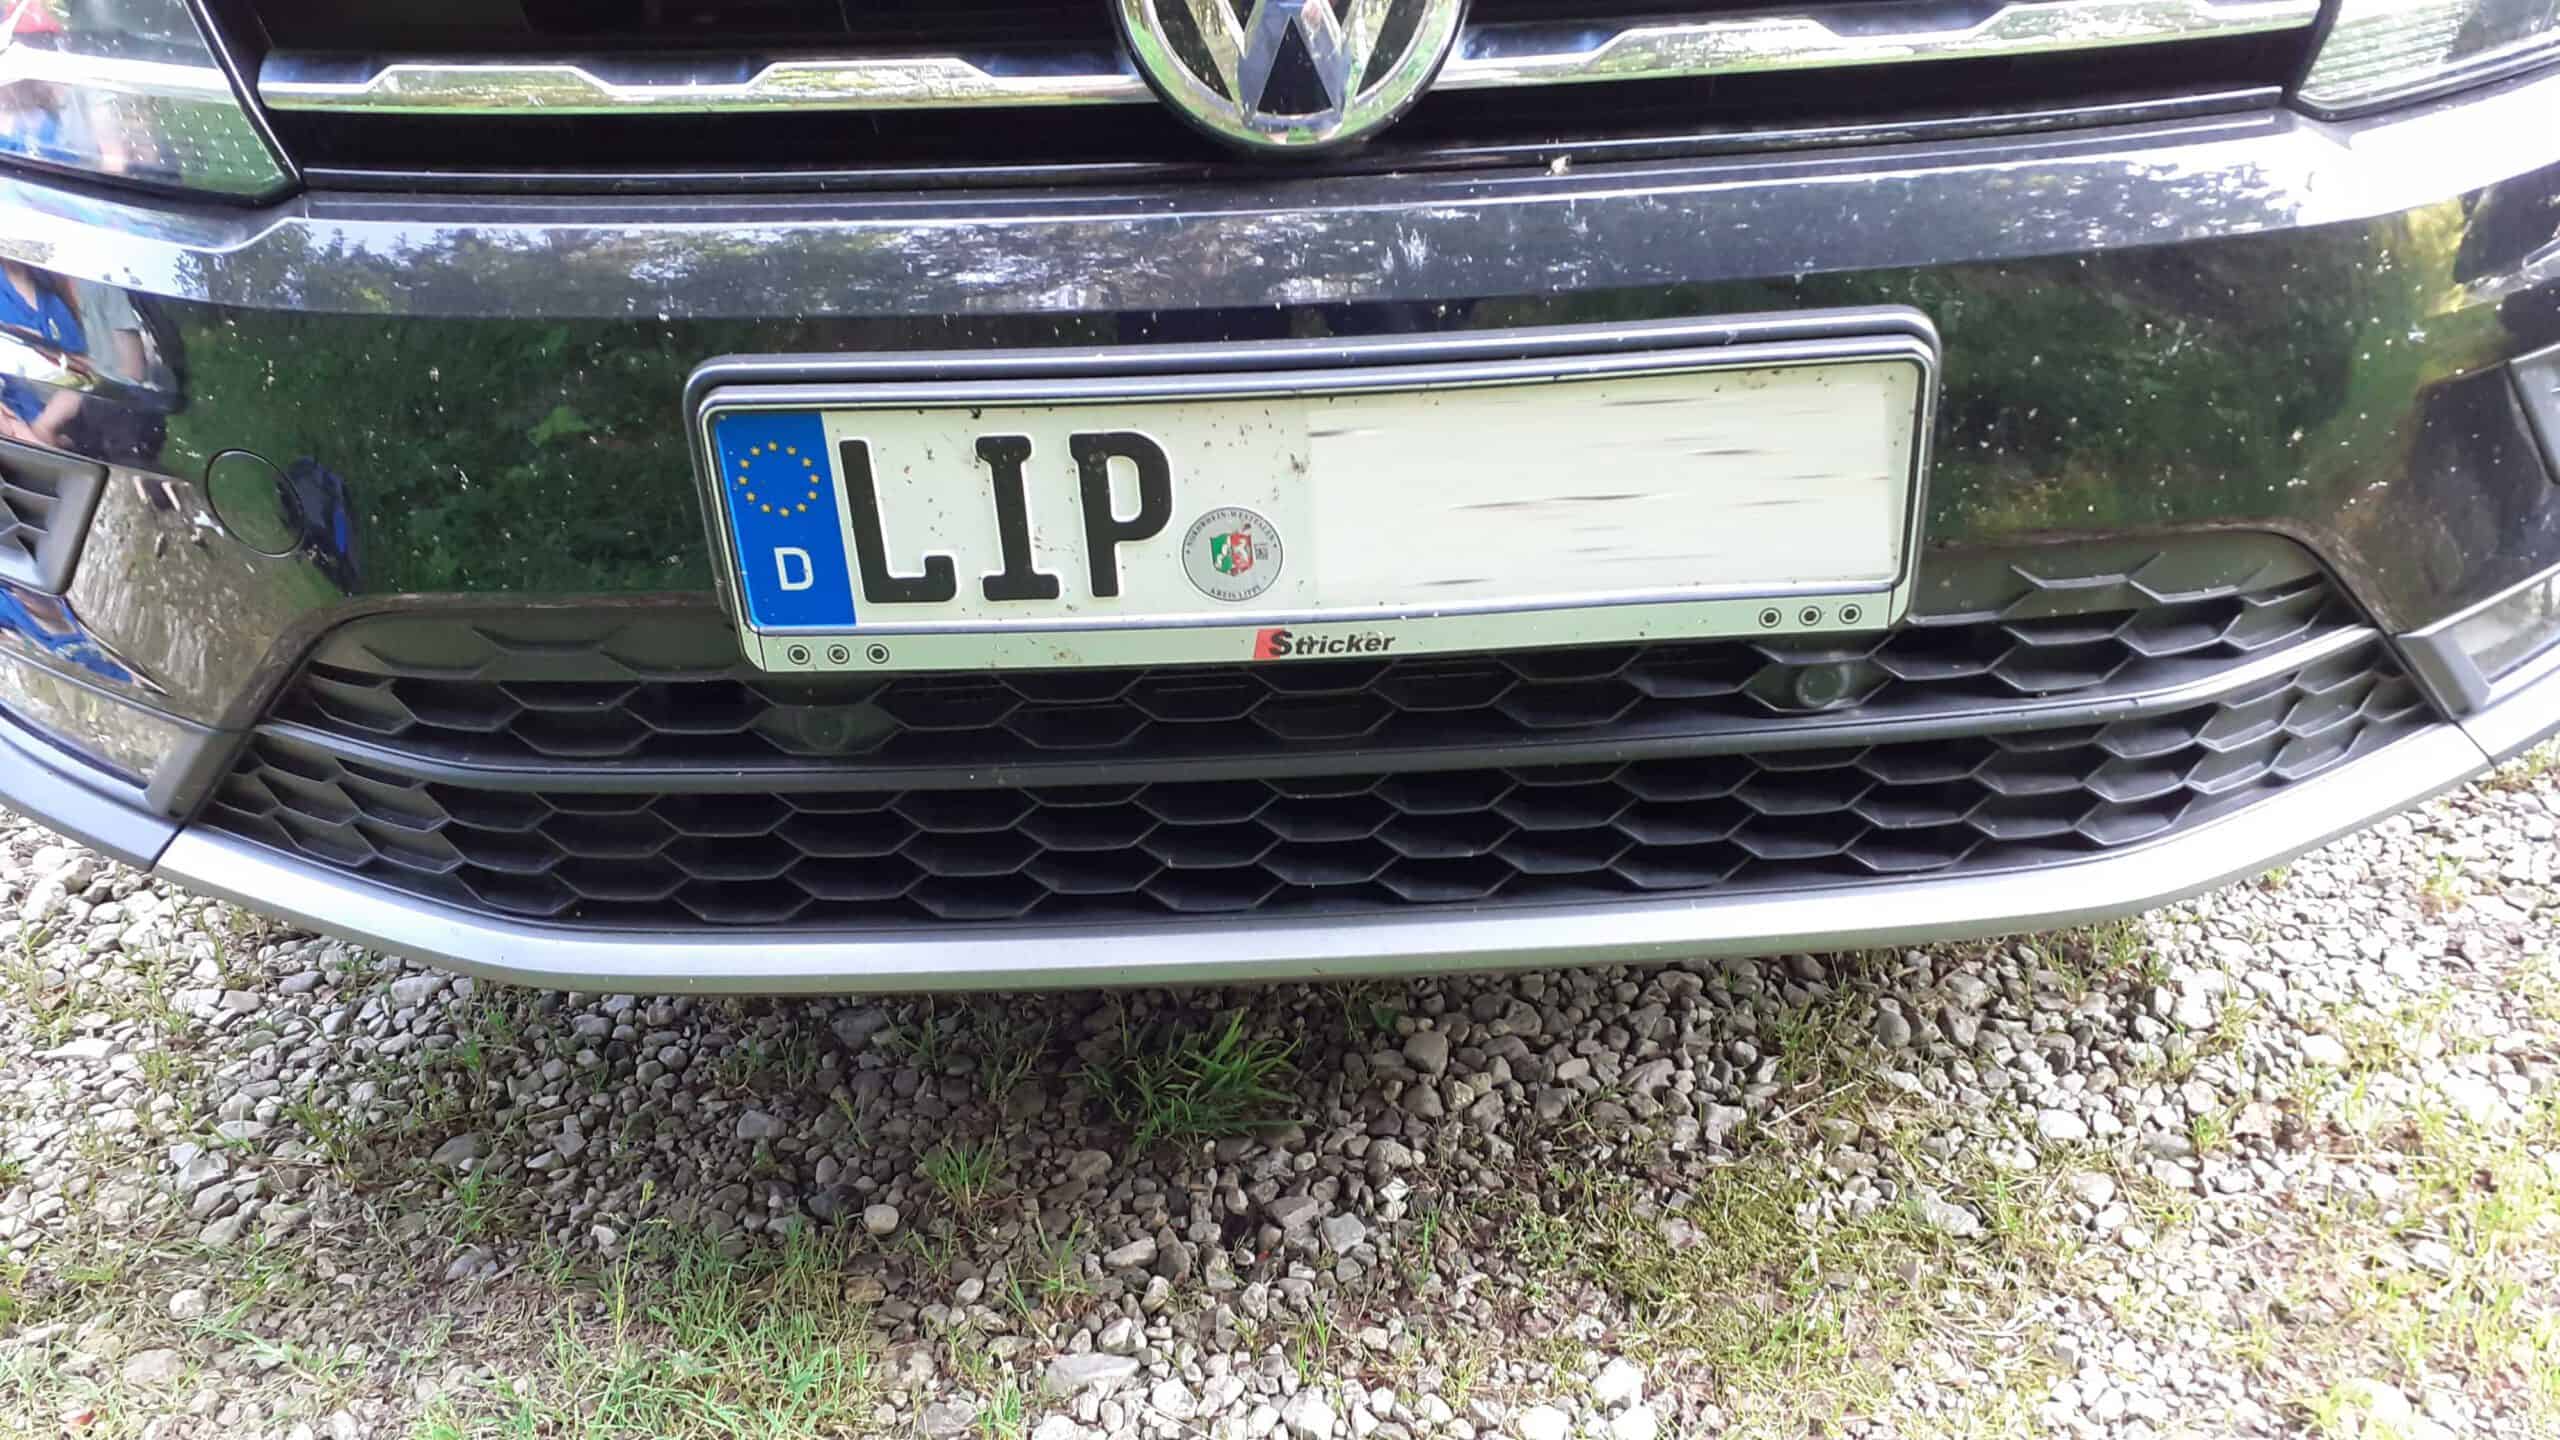 LIP Wof 252 r steht das Kennzeichen LIP Autokennzeichen Info